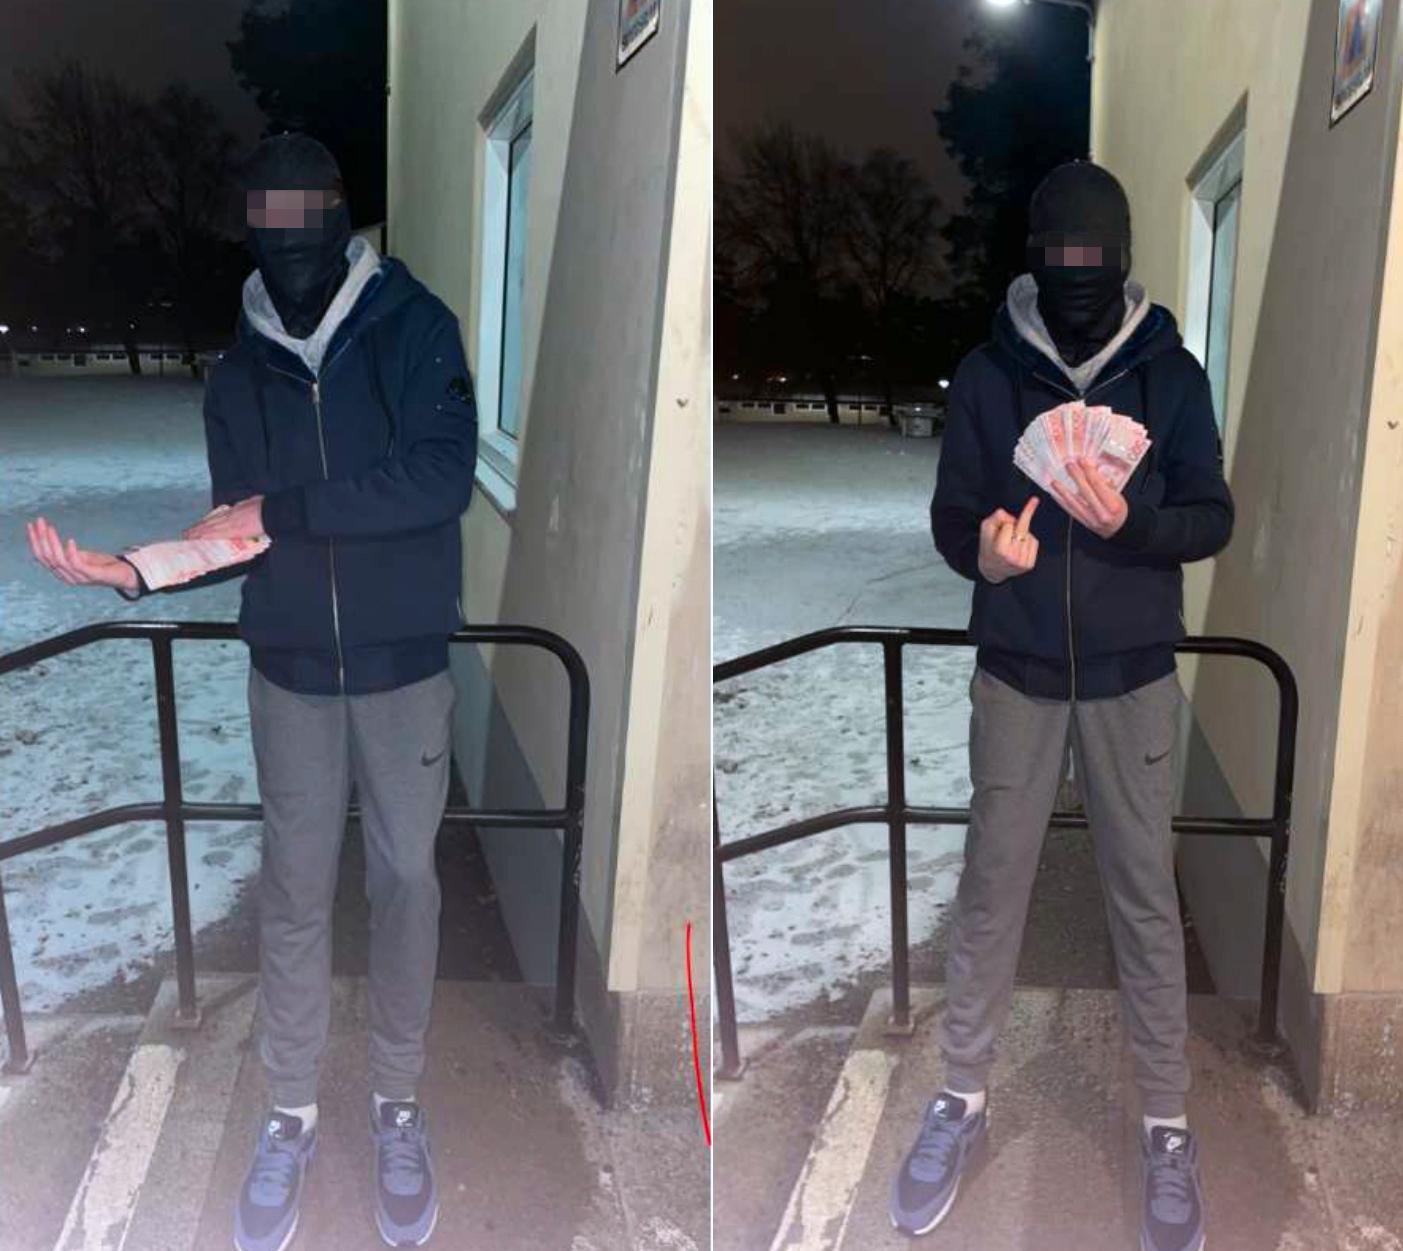 16-åringen som misstänks för mordet i Skogås poserar med sedlar. Polisen misstänker att han fått pengarna i ersättning för mordet. 